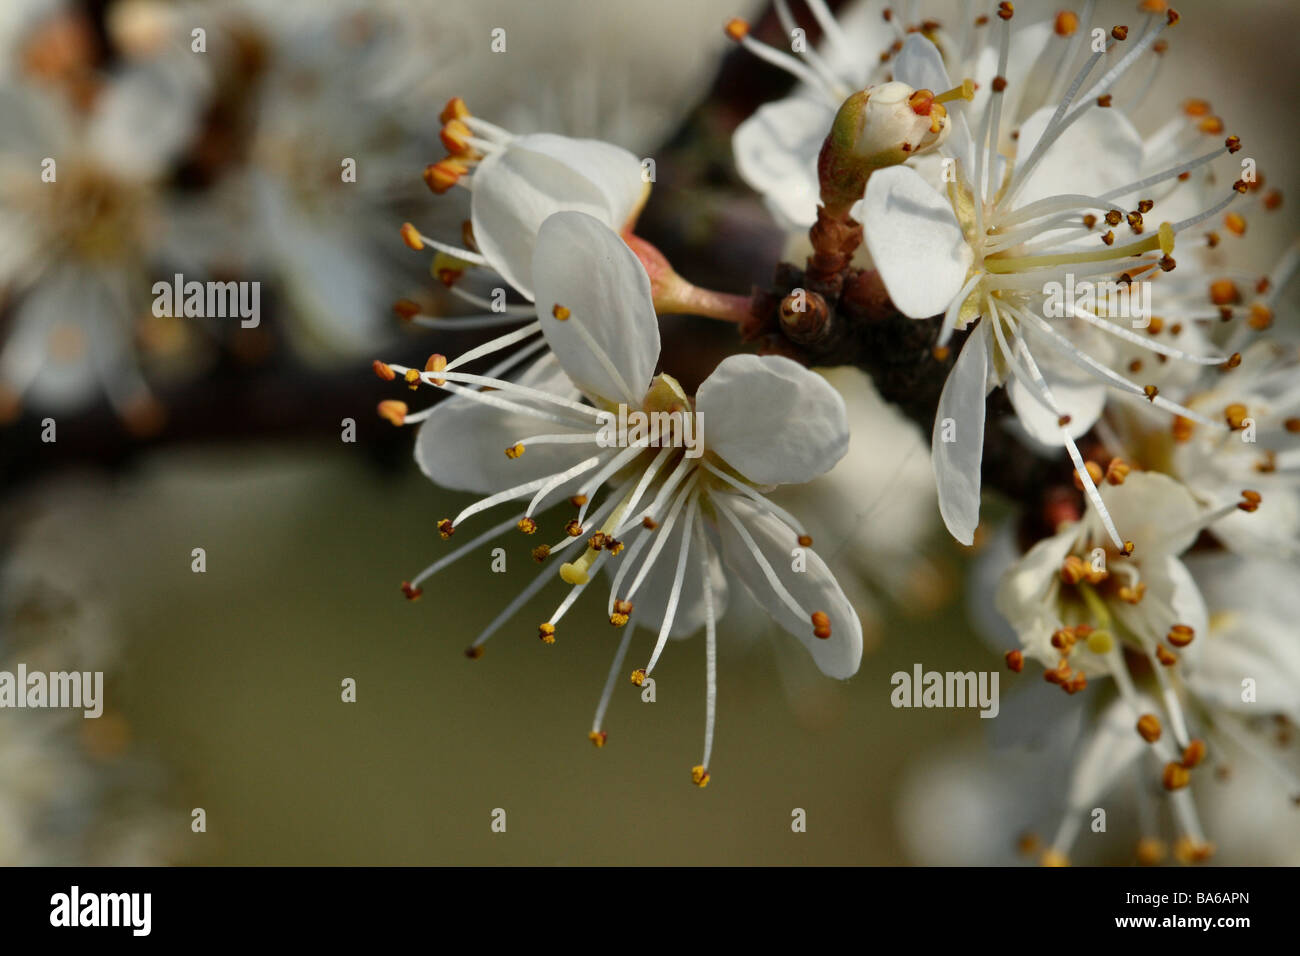 Prunellier Prunus spinosa famille des Rosacées macro close up affichant des éléments de structure de fleurs Banque D'Images